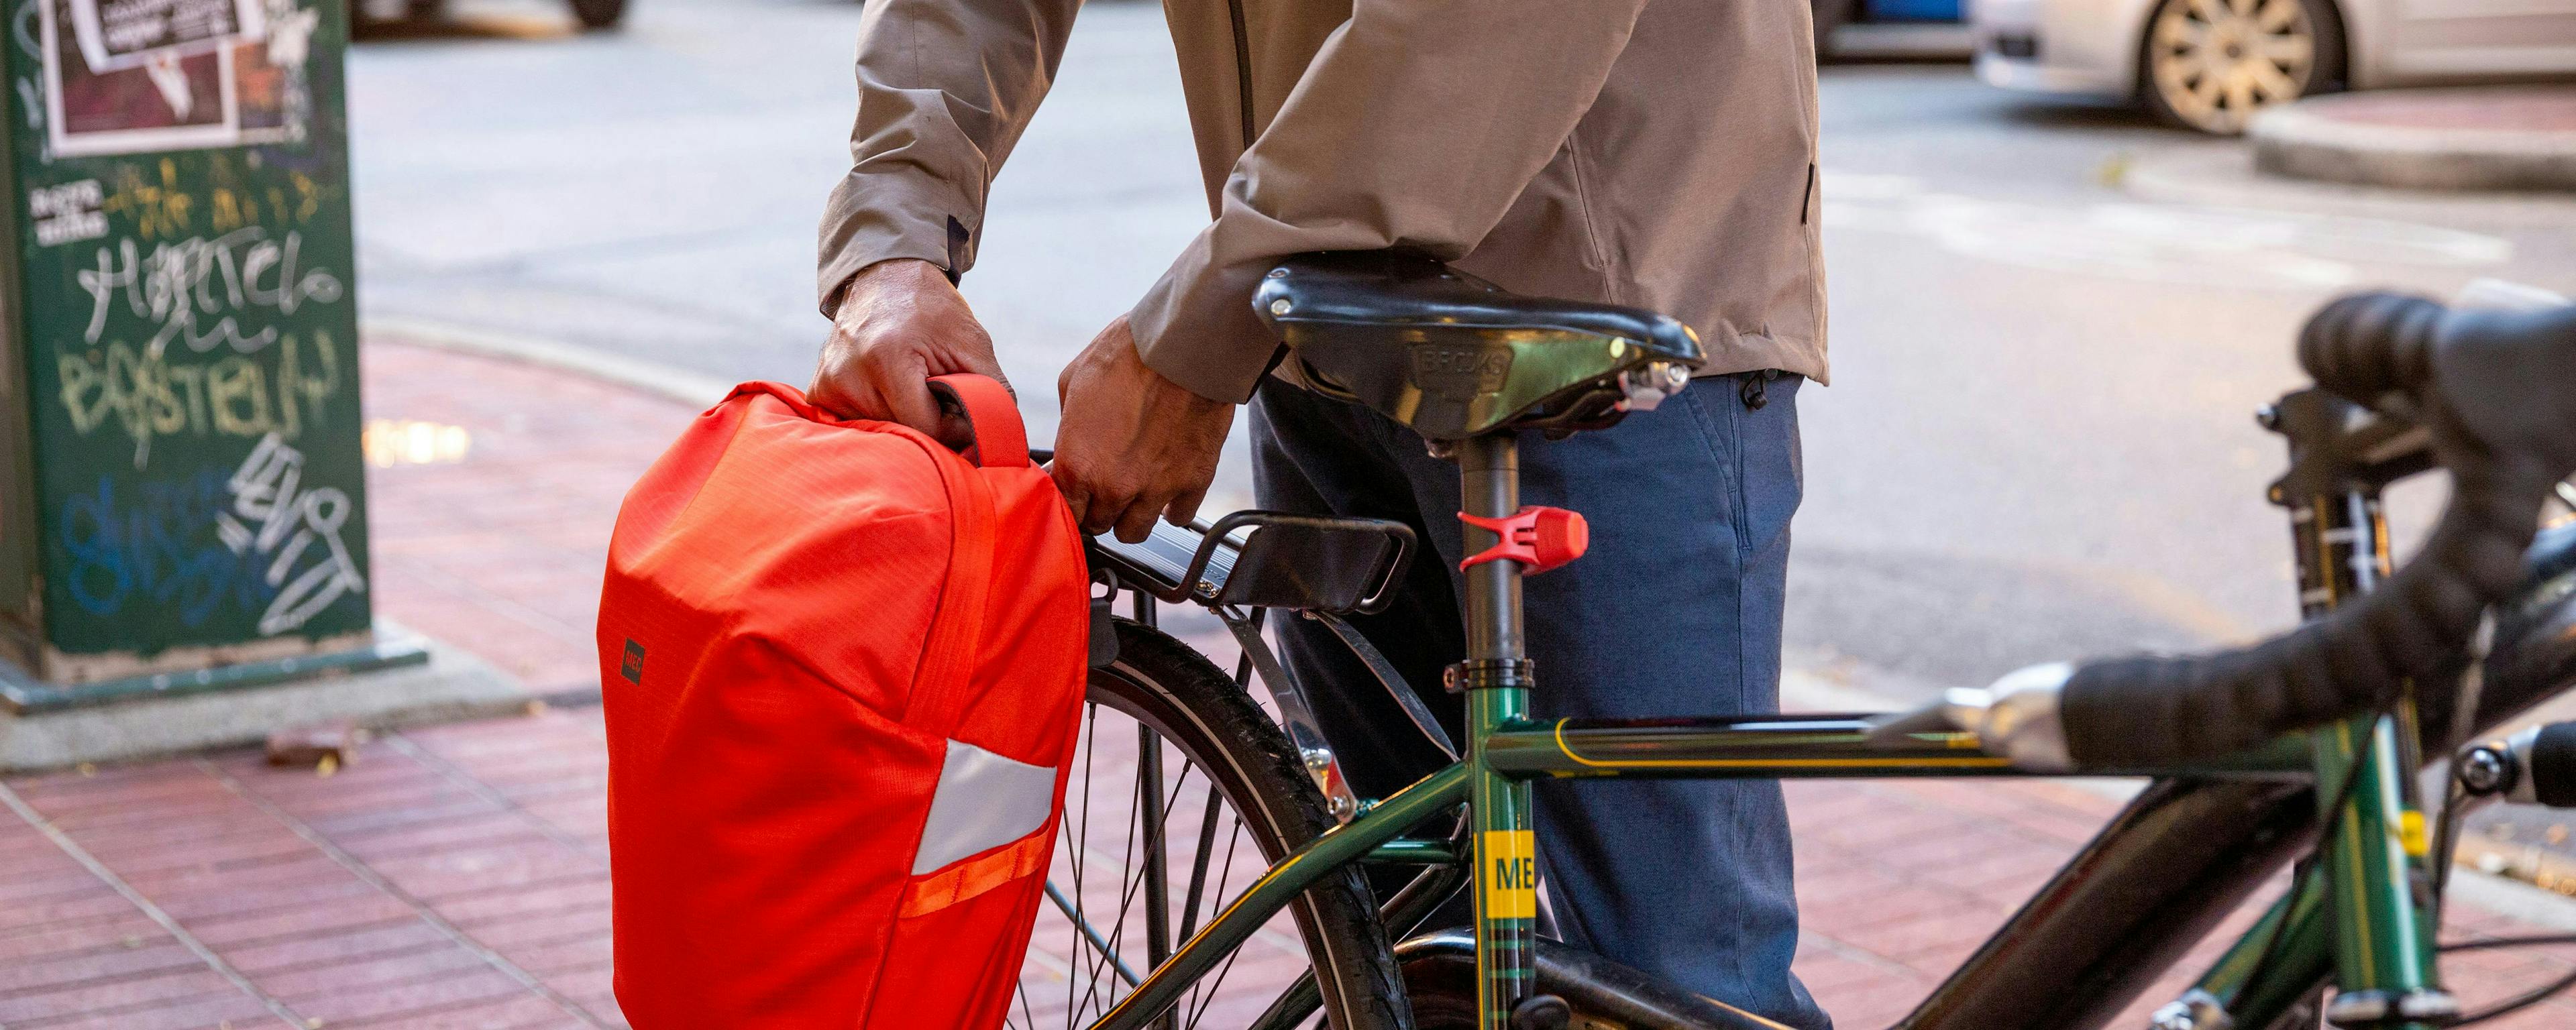 Comment choisir des sacs et sacoches pour vélo